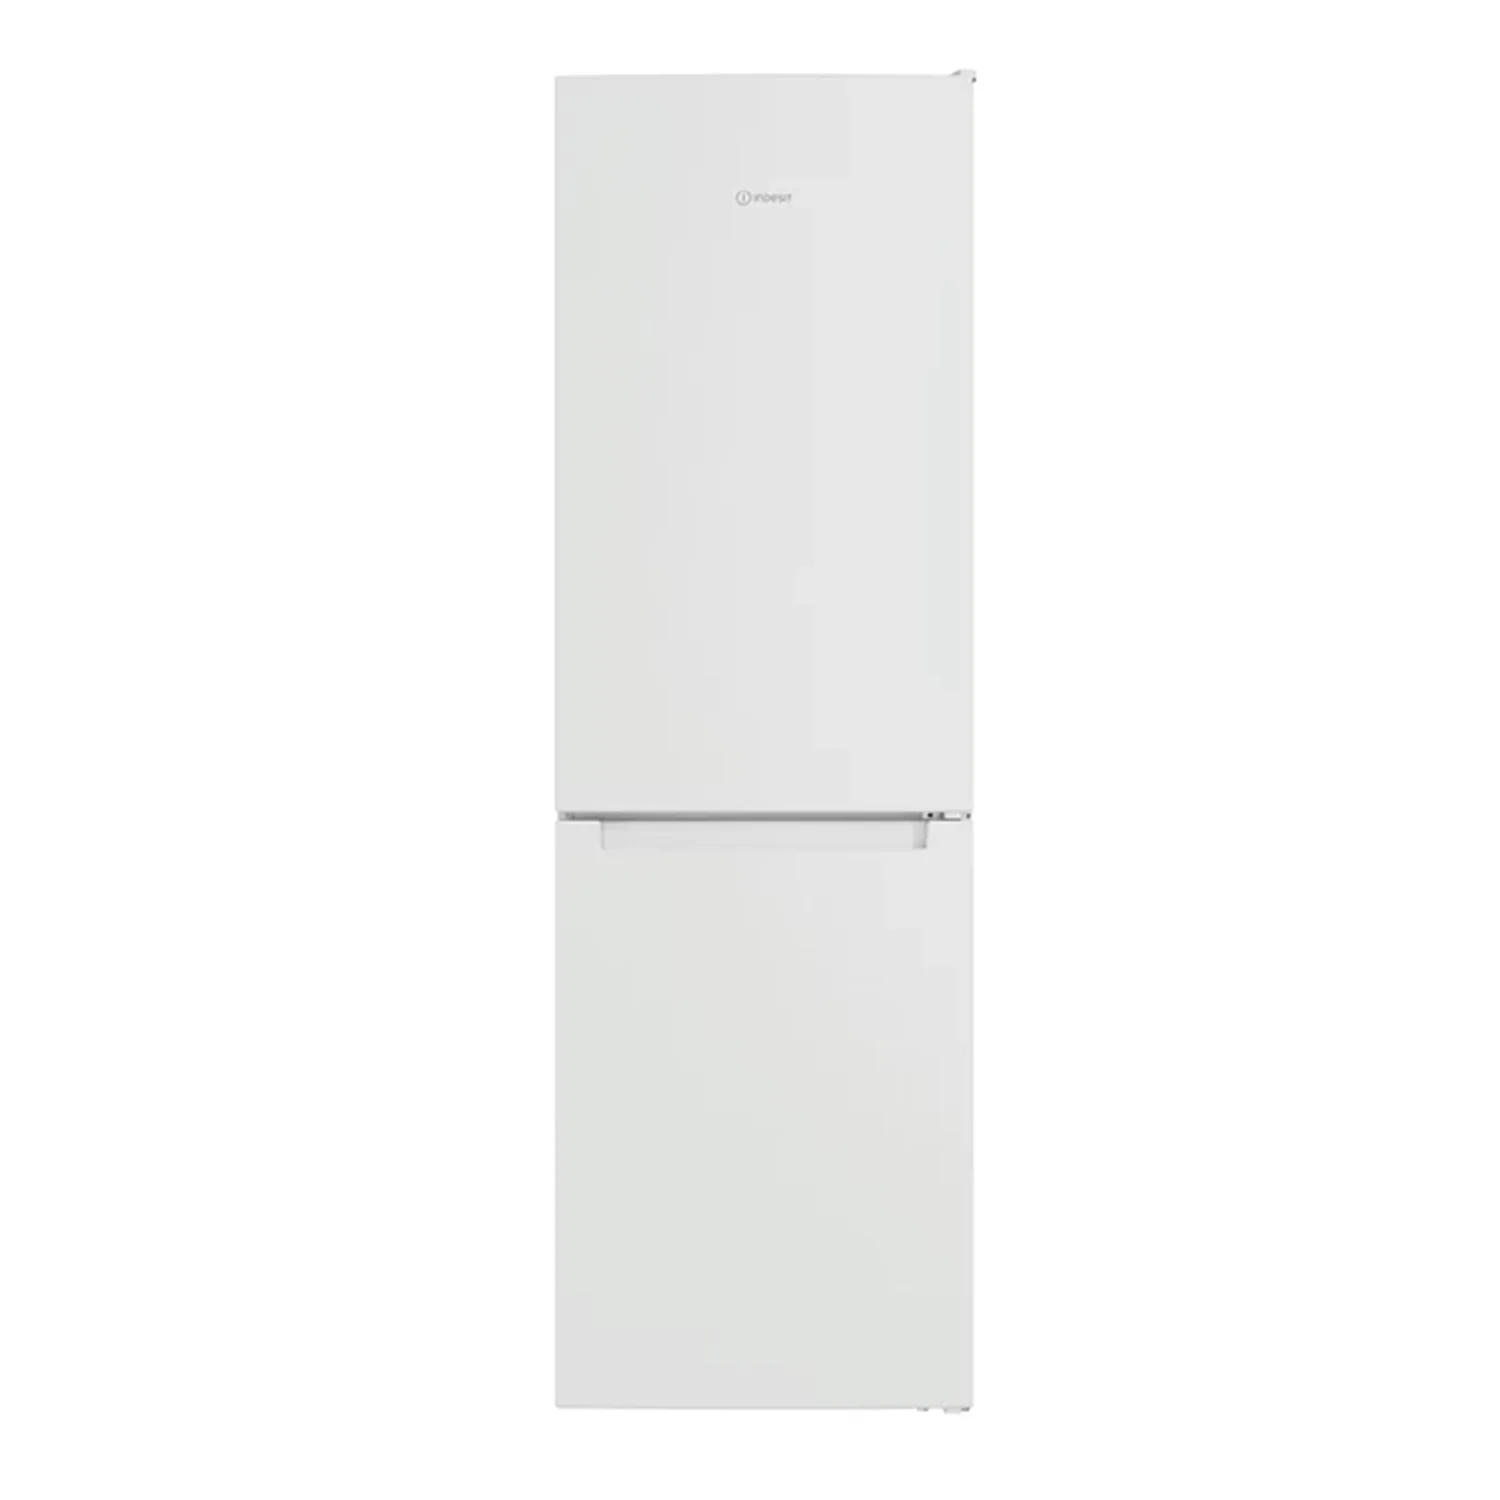 Prednja strana samostojećeg frižidera sa zamrzivačem Indesit, bijeli